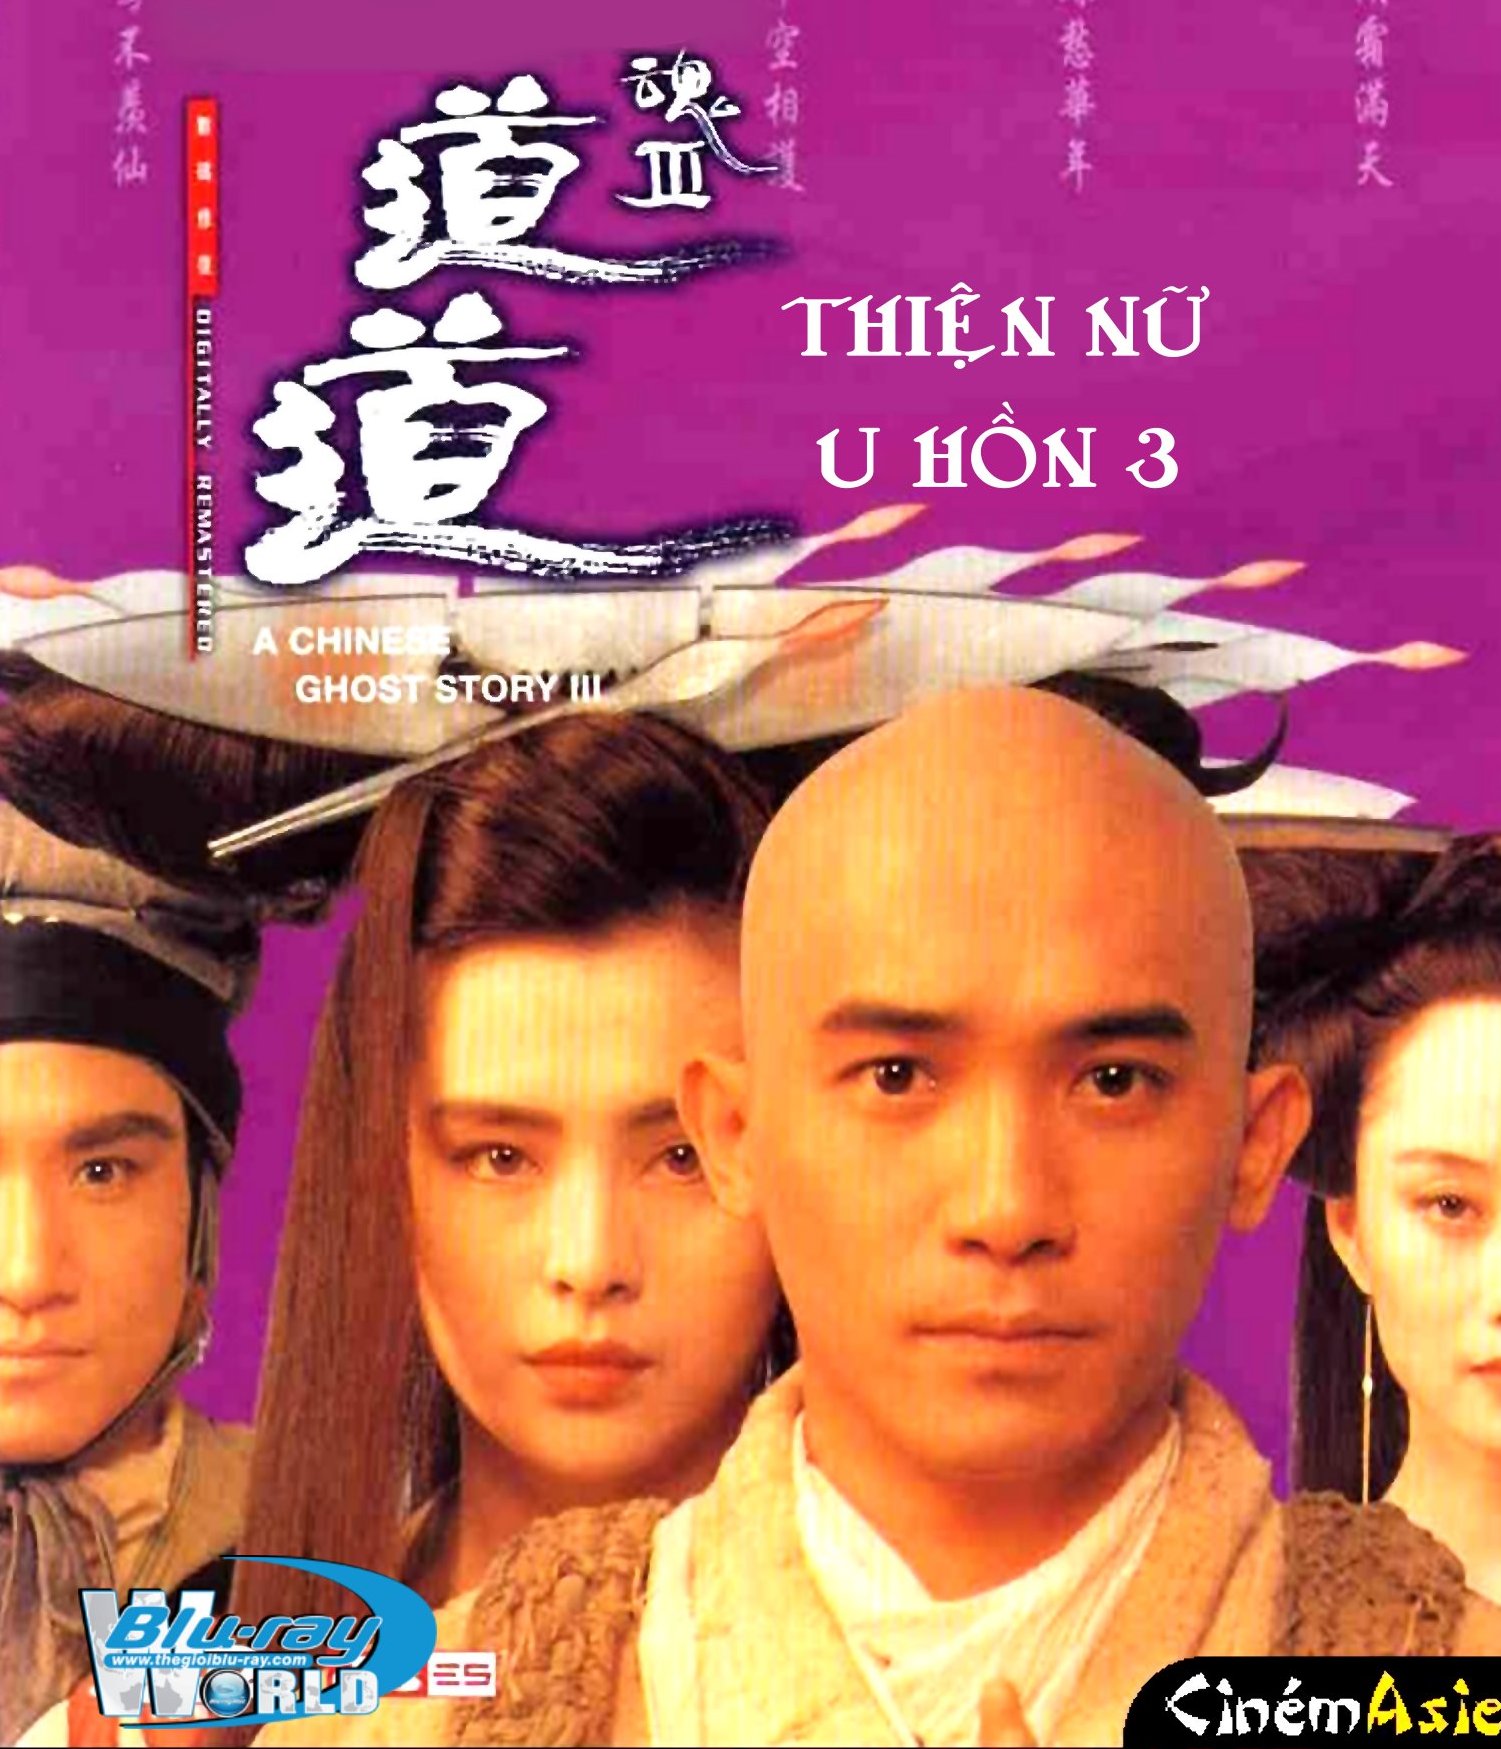 B1681. A Chinese Ghost Story 3 - THIỆN NỮ U HỒN 2D 25G (DTS-HD MA 5.1)